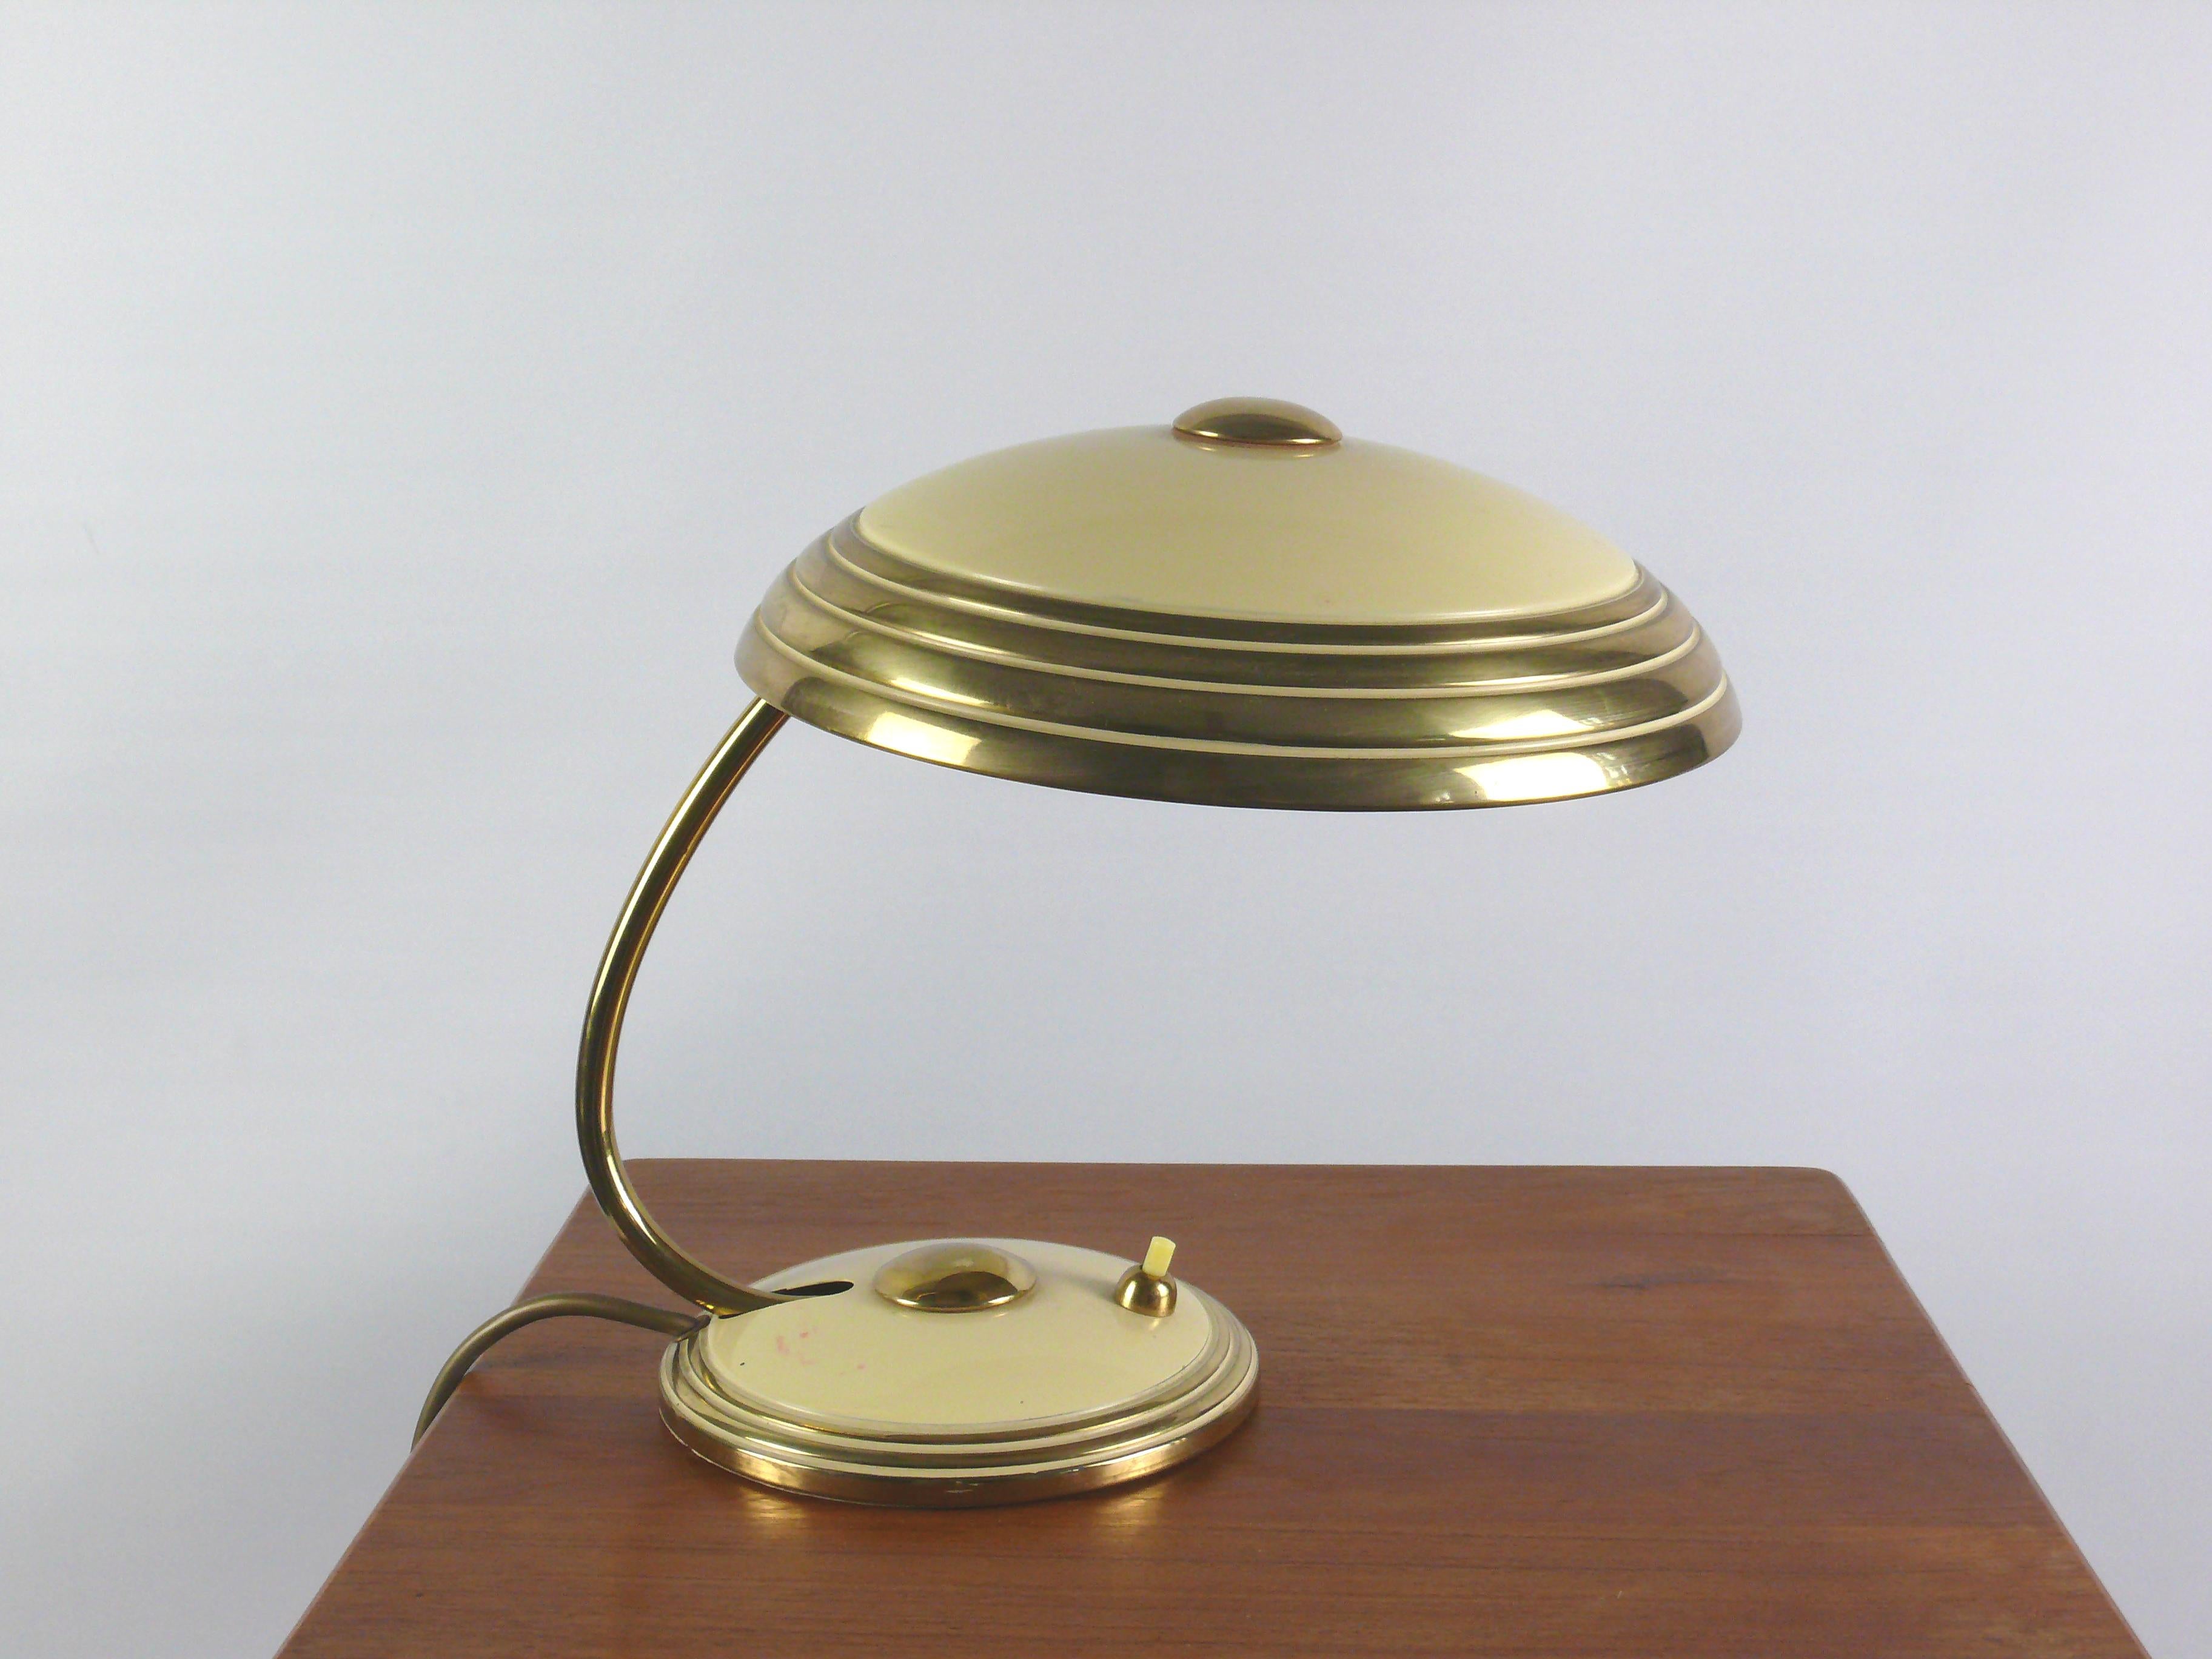 Lampe de table Helo bien conservée, un classique intemporel des années 1950. La légère différence entre les parties peintes en beige et les parties en laiton brillant confère à la lampe un calme noble. D'un point de vue stylistique, le design de la